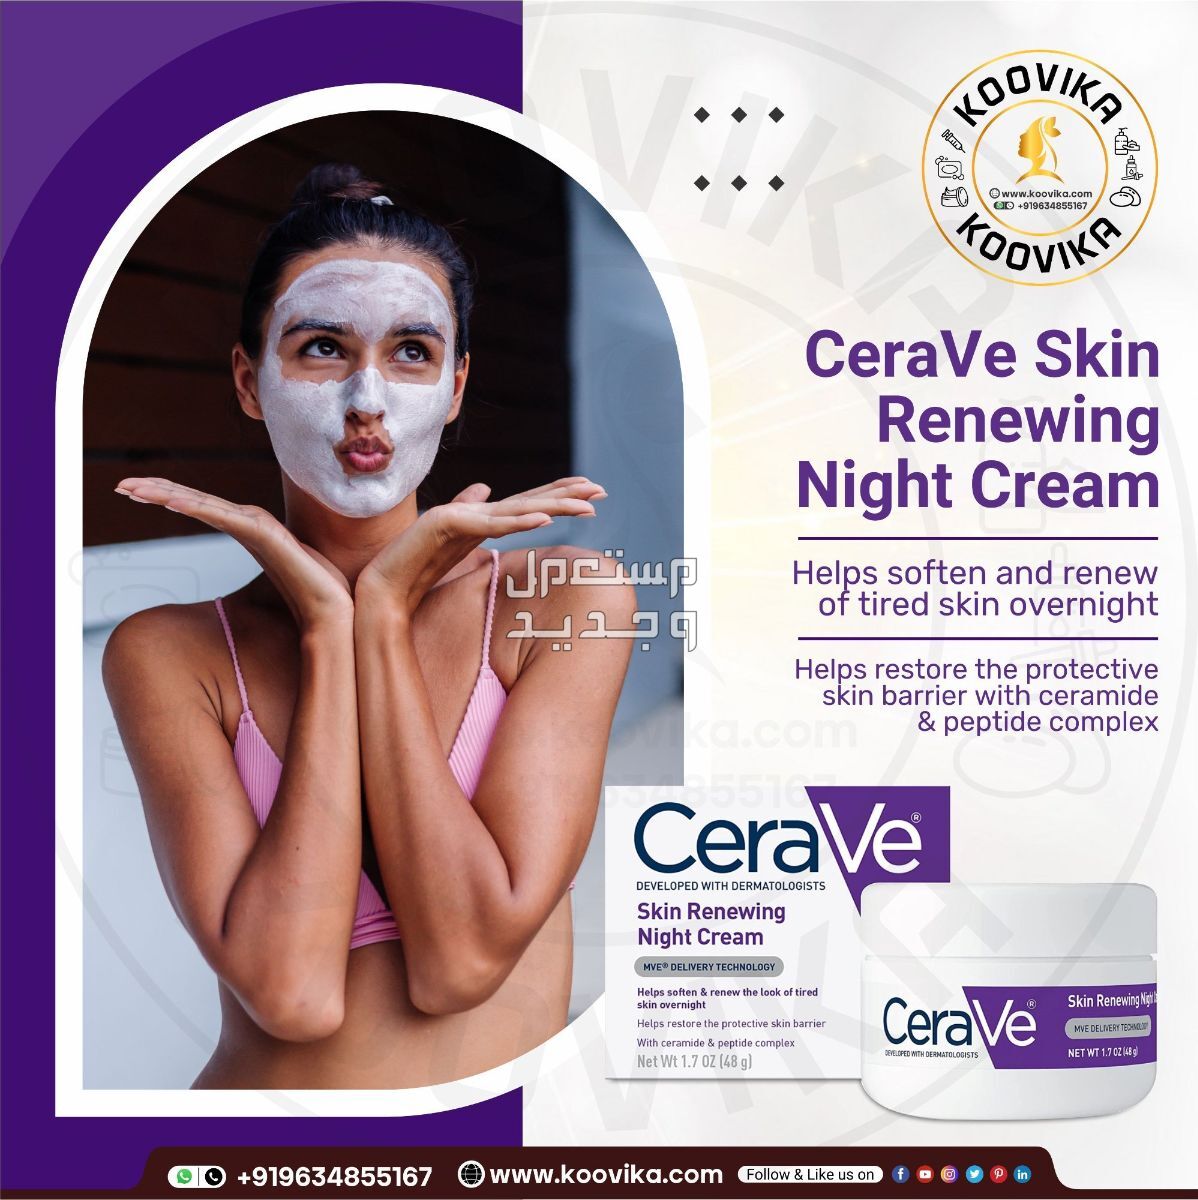 أفضل كريم ليلي للعناية بالبشرة لعام 2023 في الكويت شكل كريم ليلي من CeraVe Skin Renewing Night Cream على البشرة